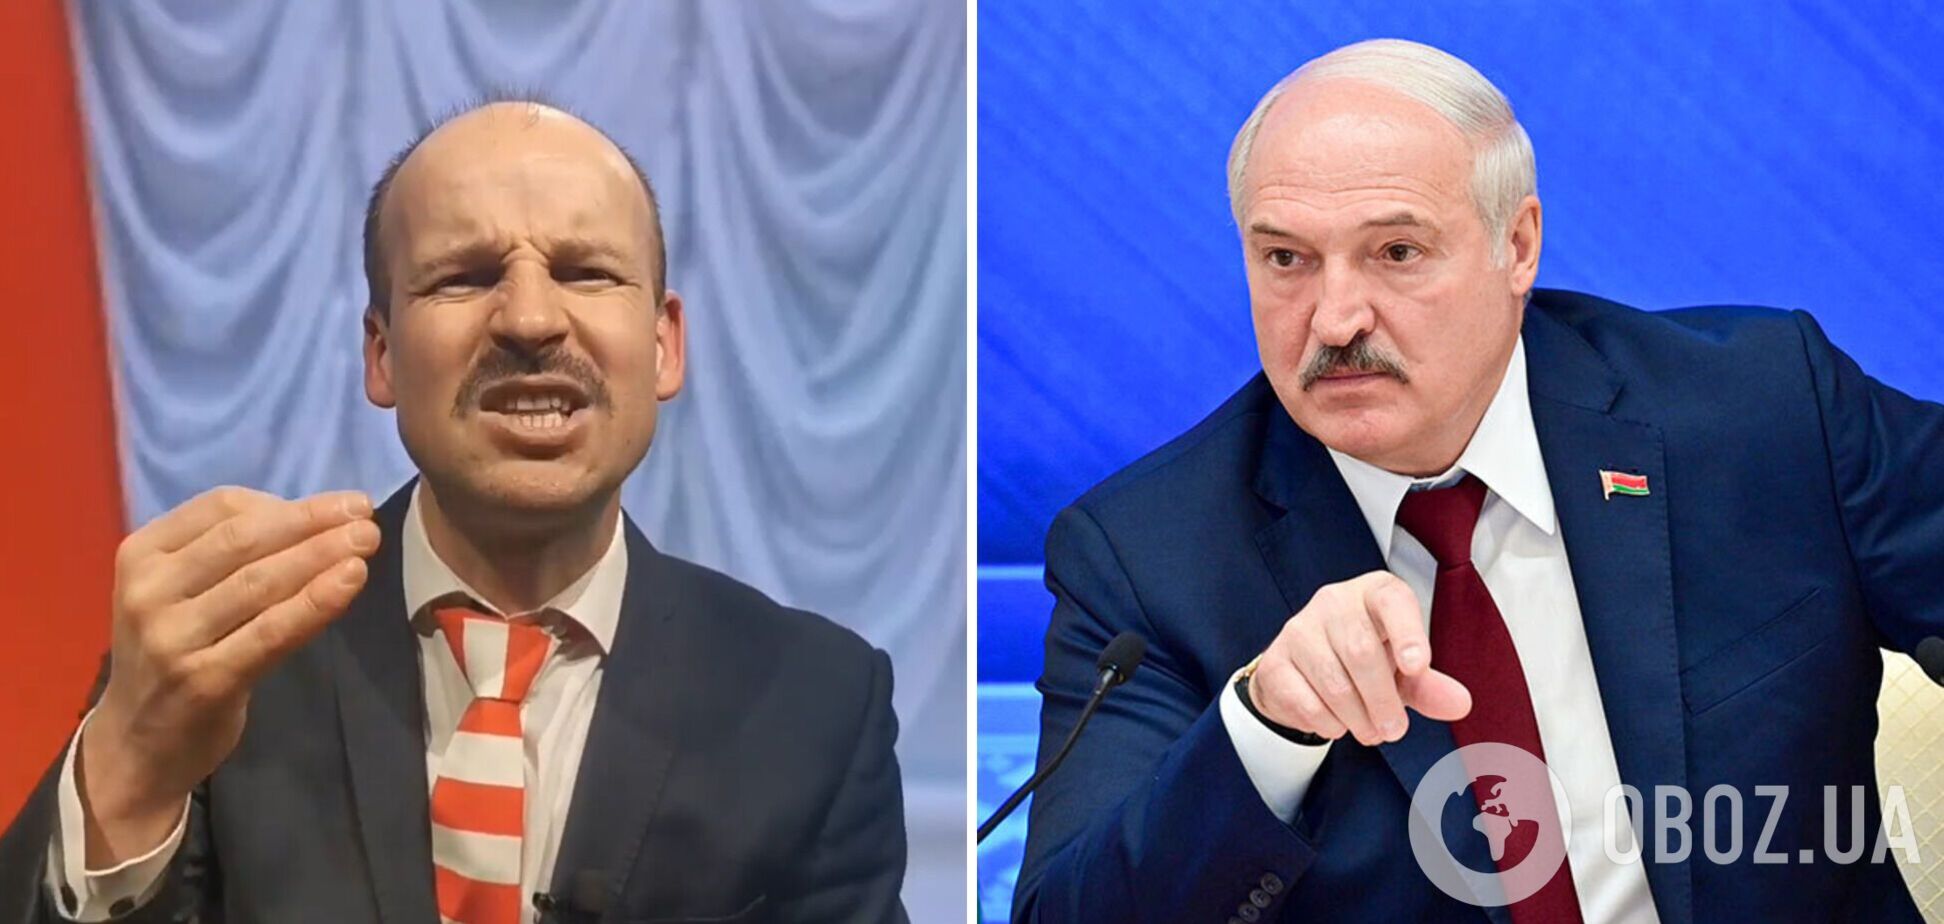 Великий в образе Лукашенко потролил Беларусь: вспомнил о прокладках с 'крылышками' и кнопочных телефонах. Видео